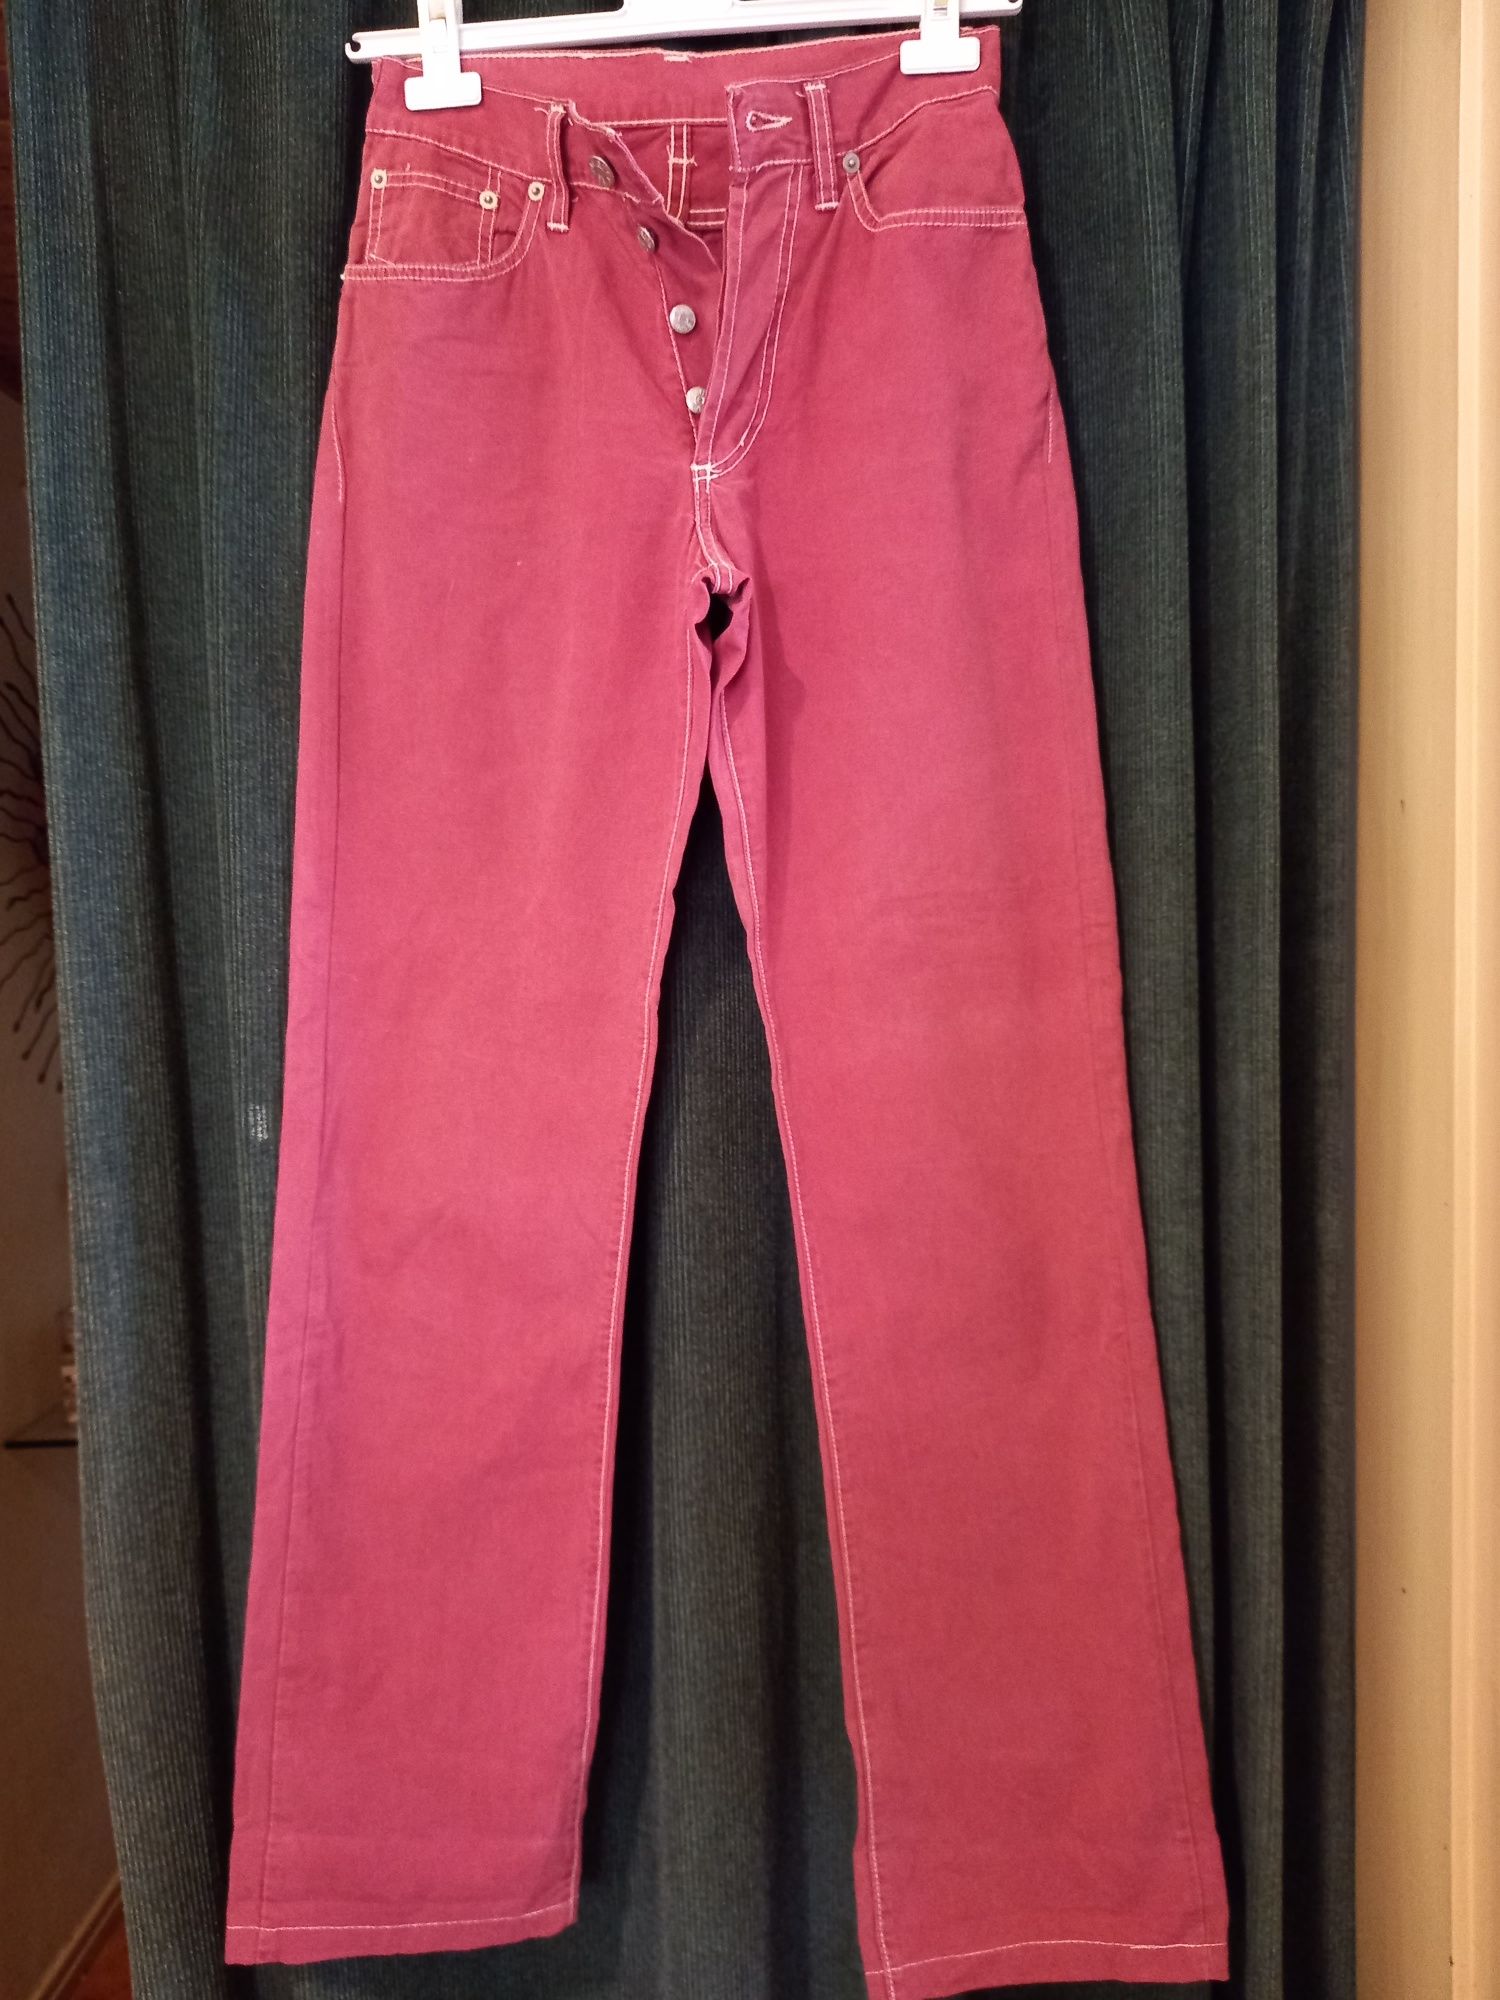 Calça rosa velho ESPRIT